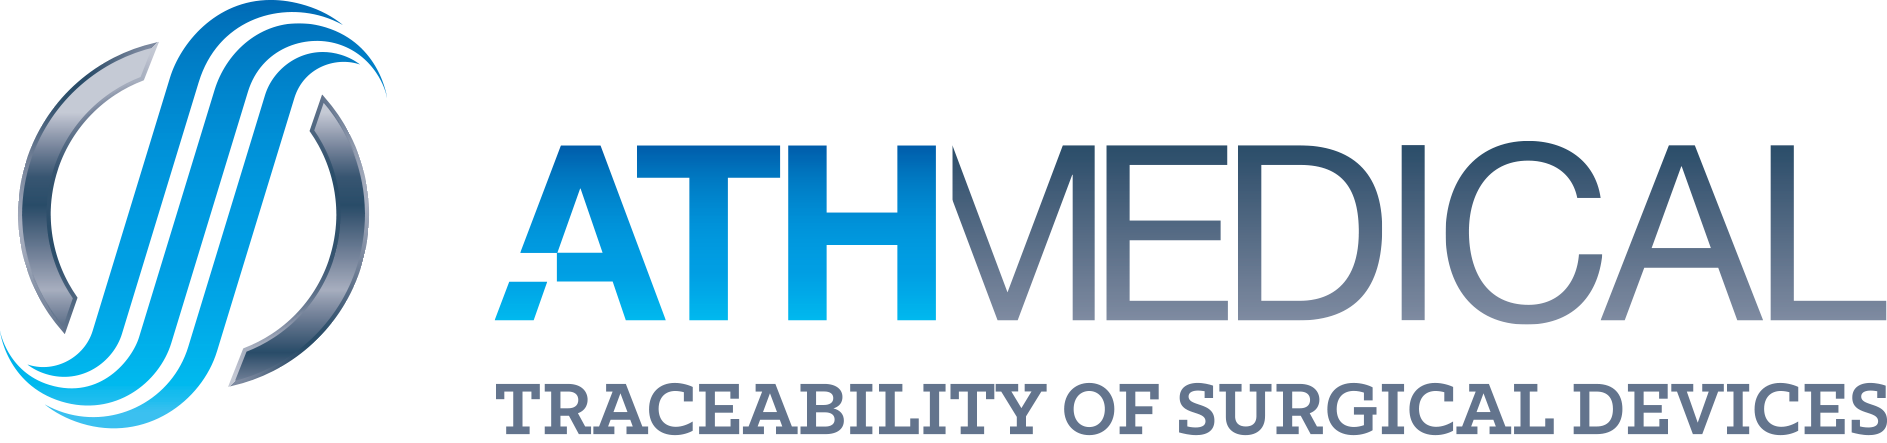 ATH Medical logo